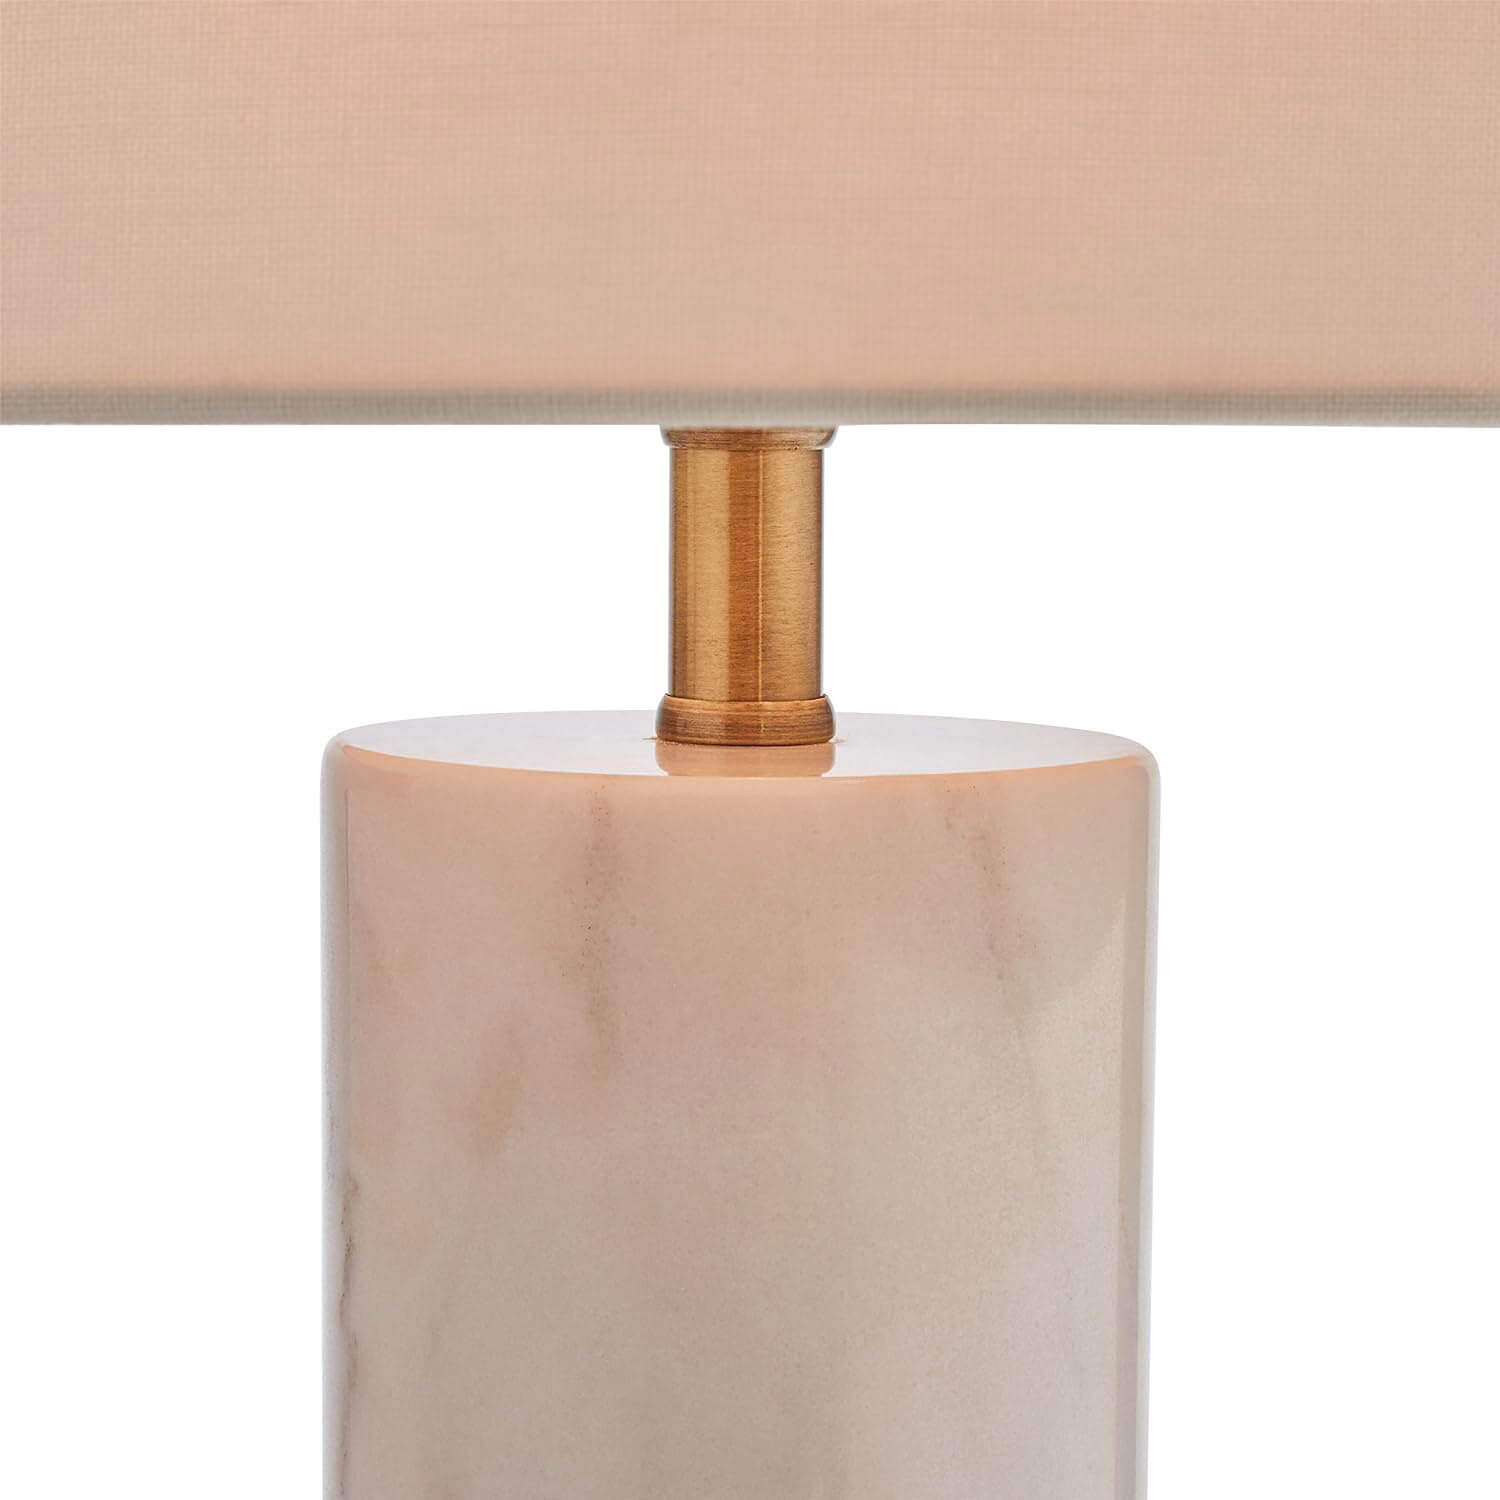 Rivet Mid-Century Modern Marble Pillar Desk Lamp, White Marble/Brass